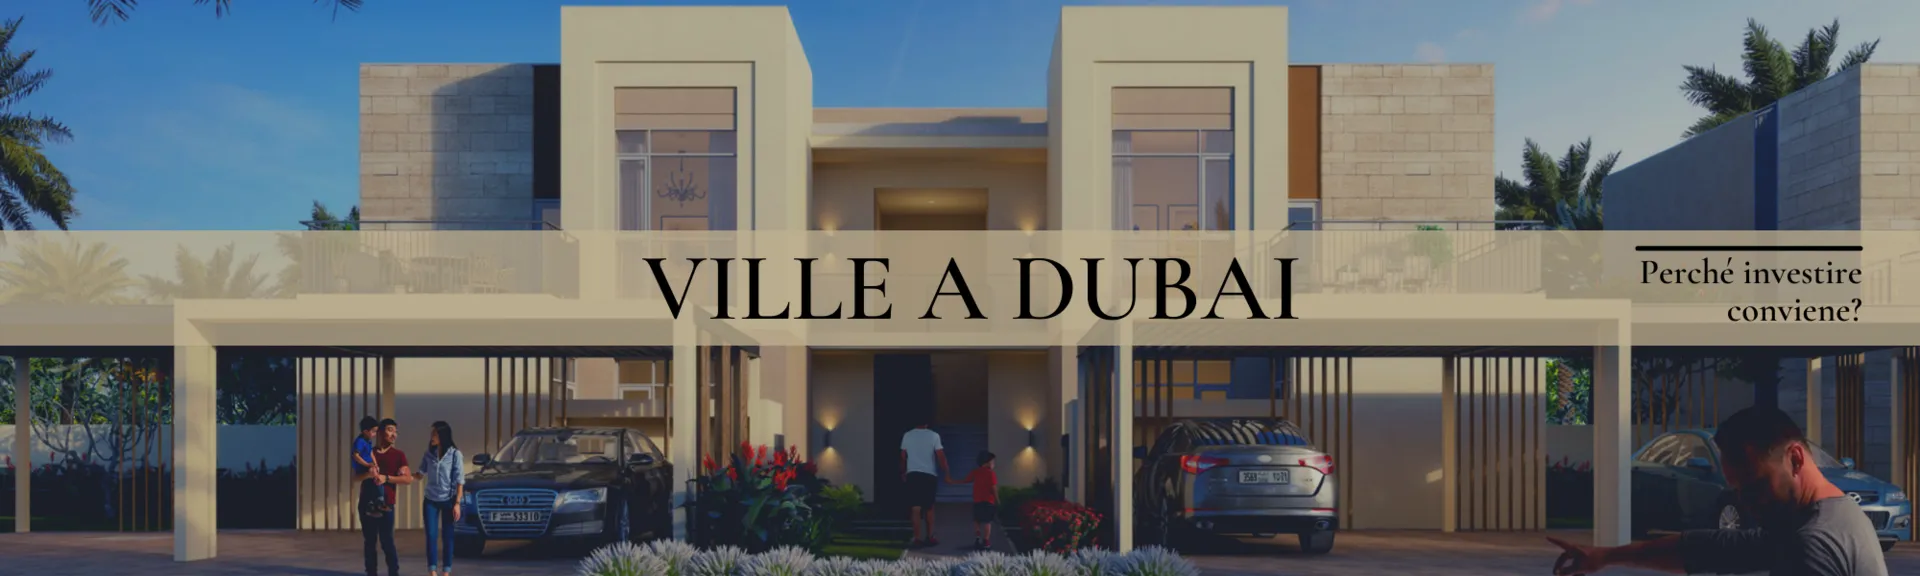 Ville a Dubai: perché investire conviene?